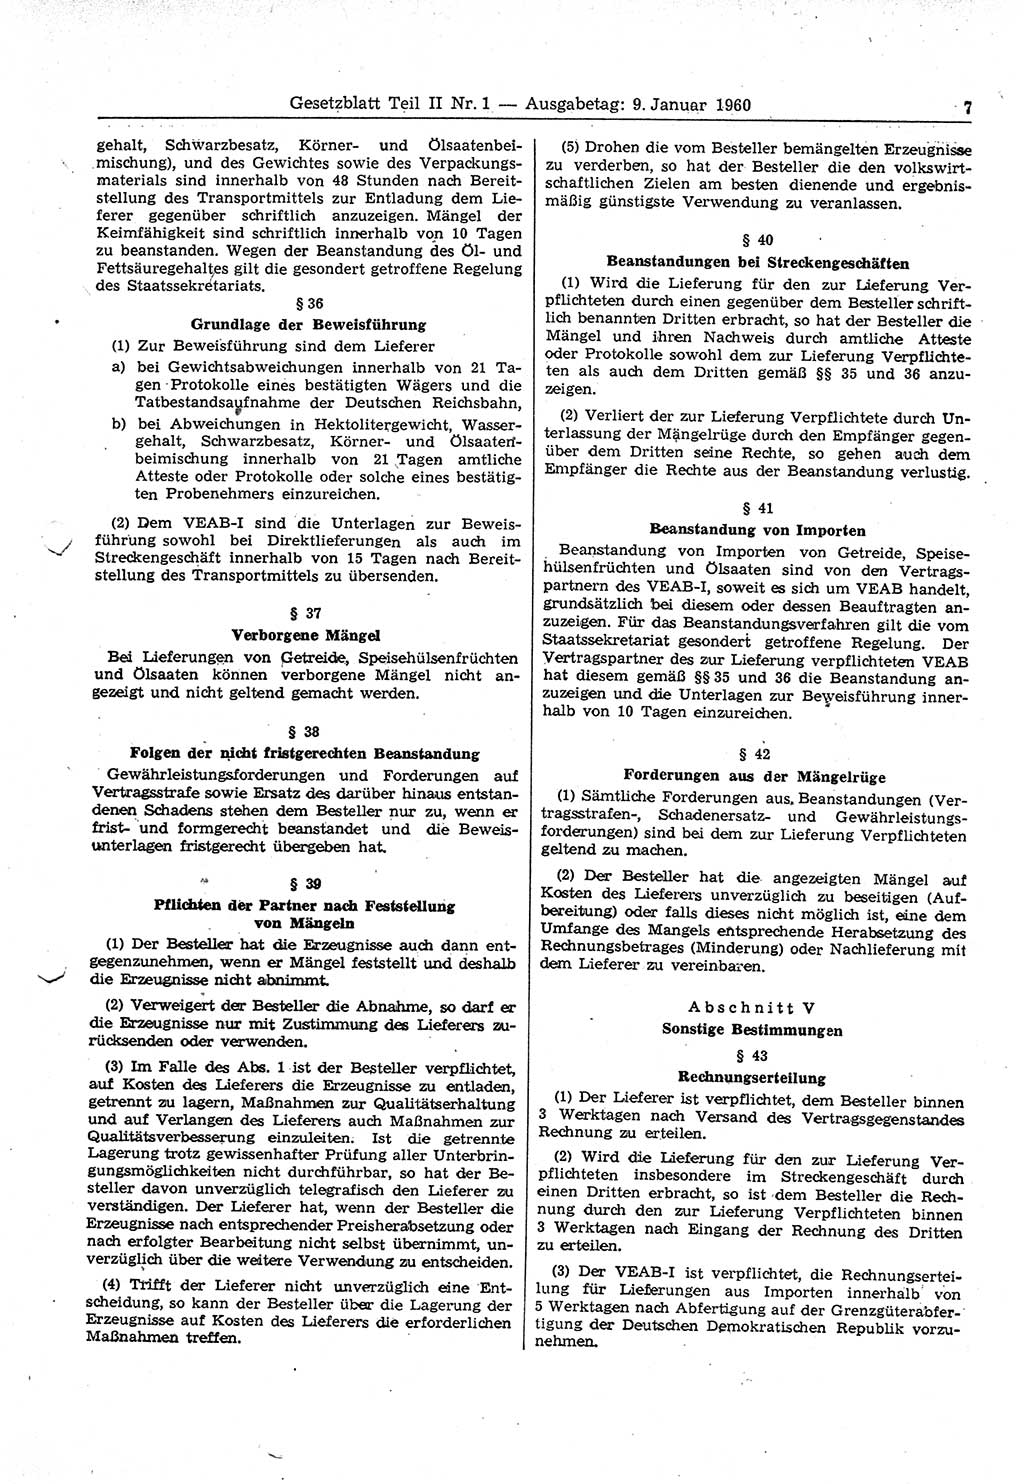 Gesetzblatt (GBl.) der Deutschen Demokratischen Republik (DDR) Teil ⅠⅠ 1960, Seite 7 (GBl. DDR ⅠⅠ 1960, S. 7)